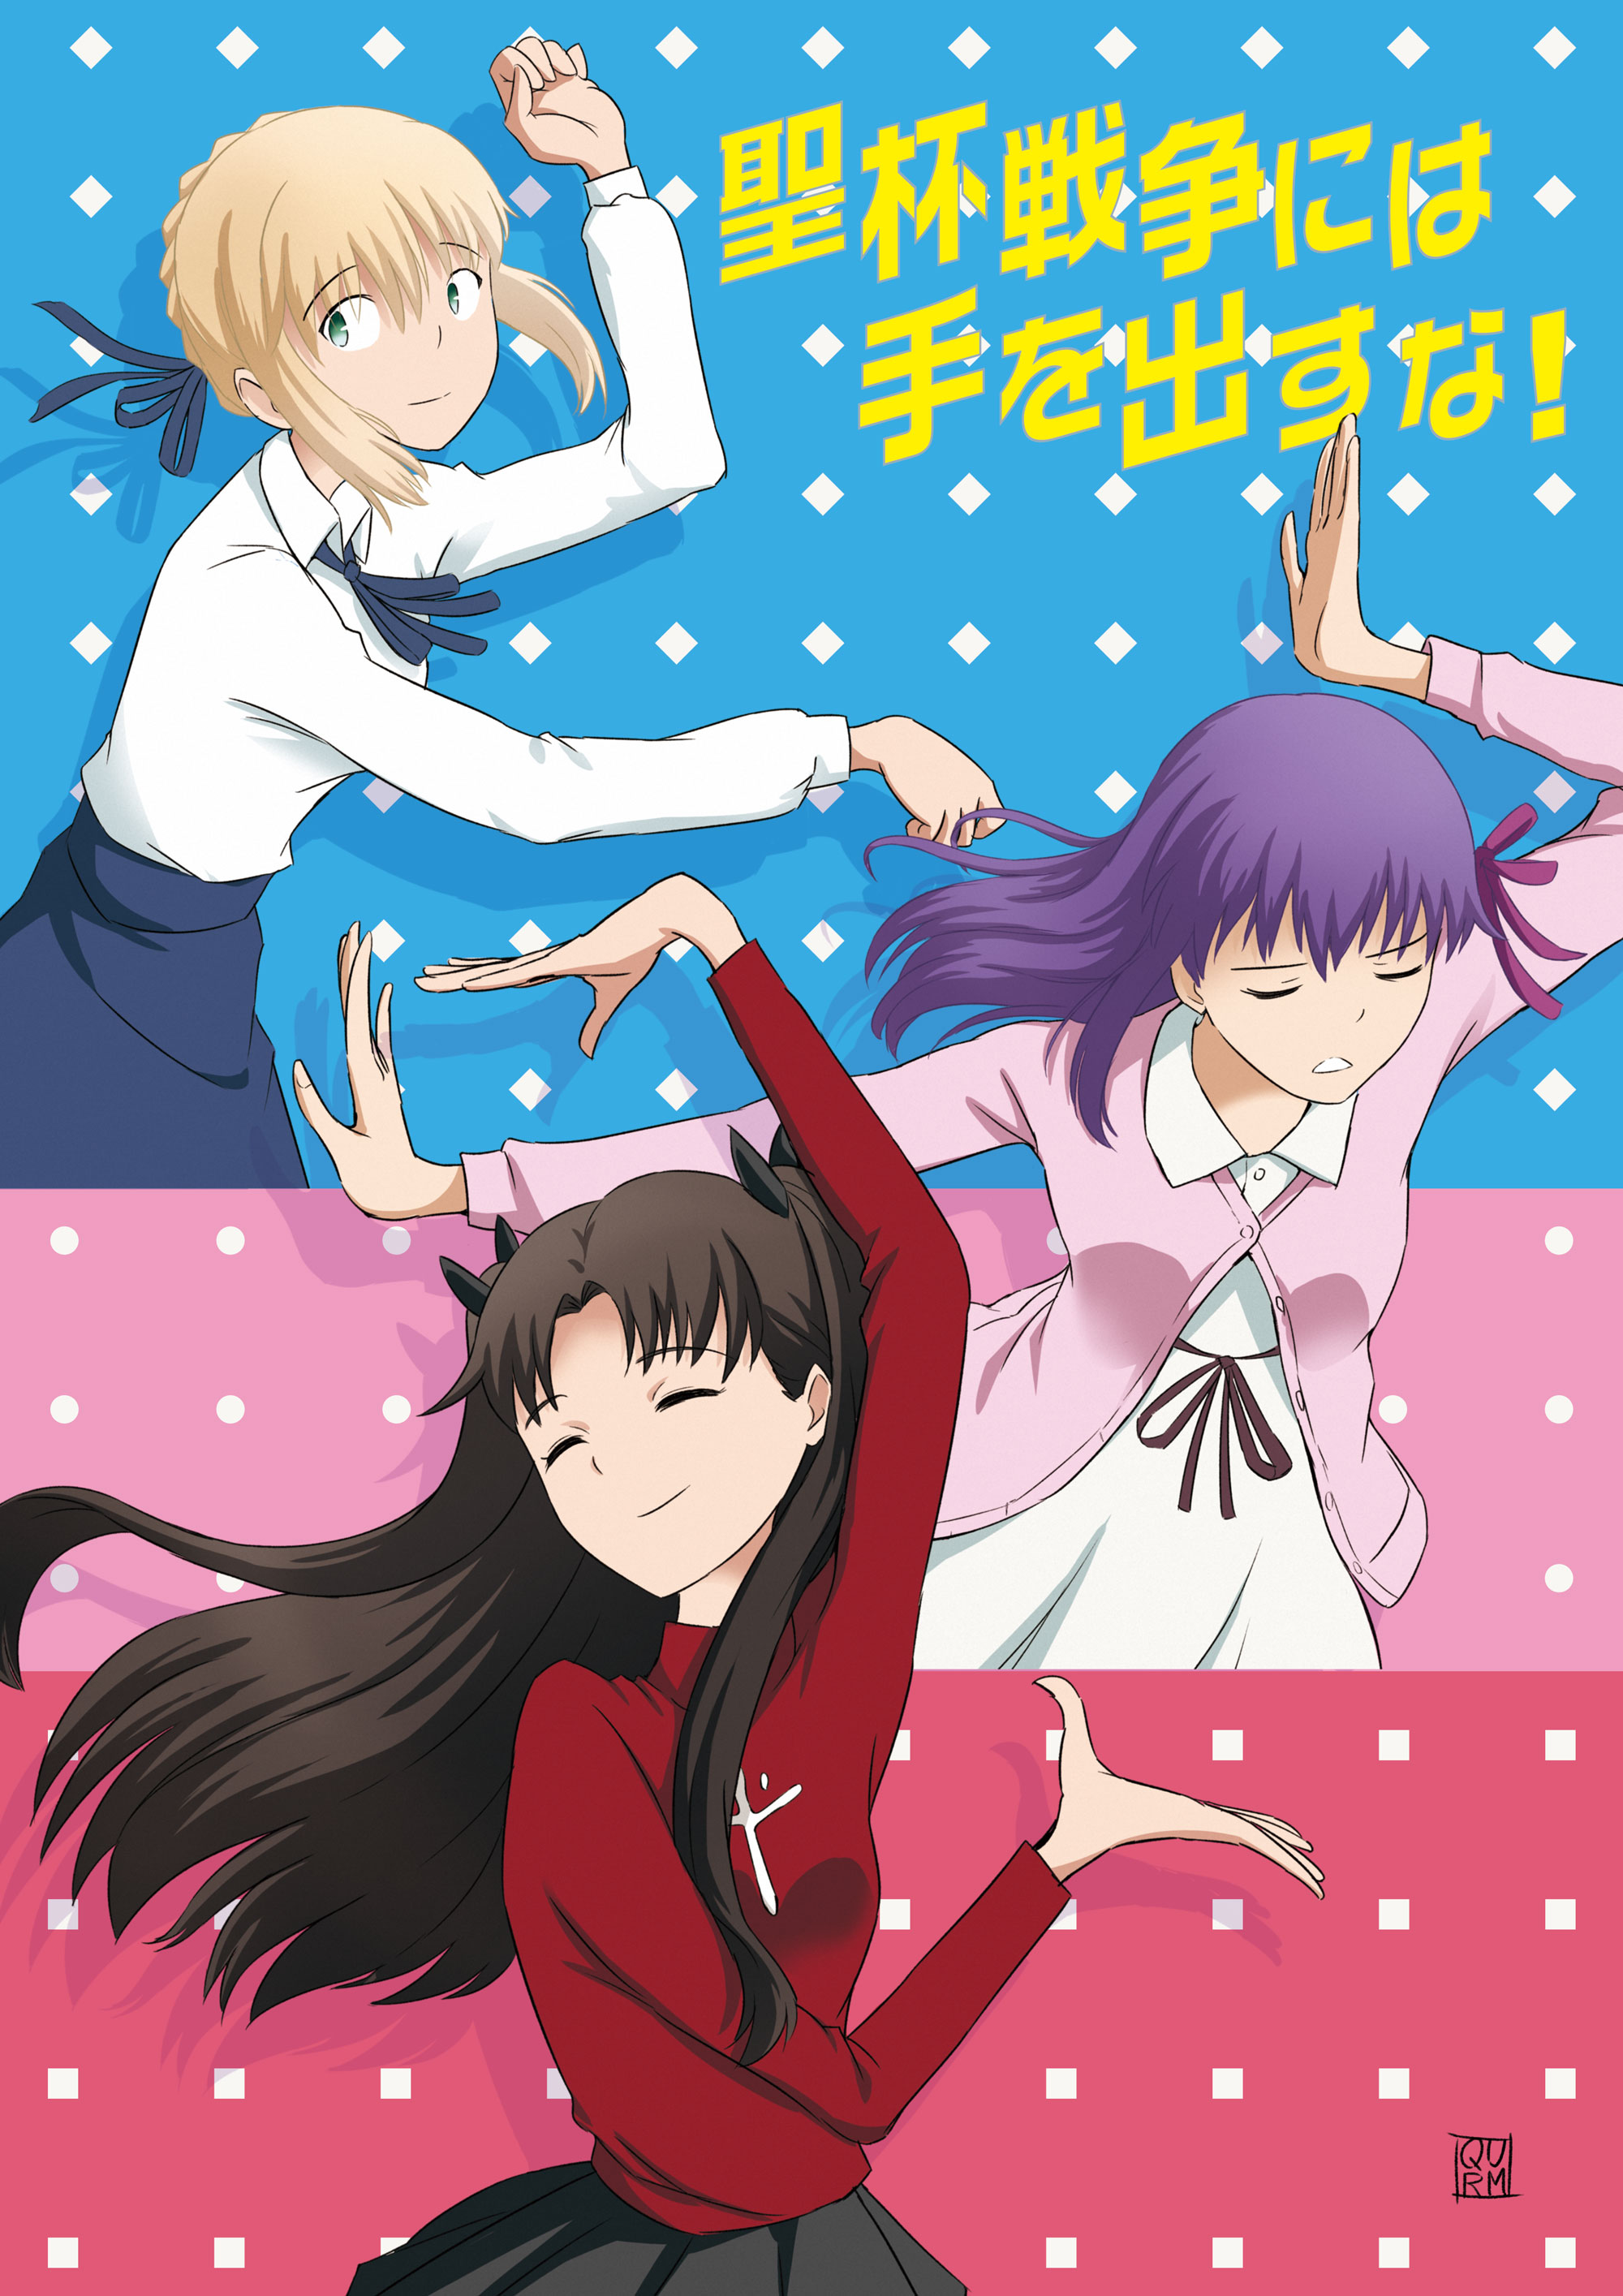 Fate Series FGO Eizouken Ni Wa Te Wo Dasu Na Crossover Anime Girls Dancing Long Hair 2D Blond Hair B 2000x2829